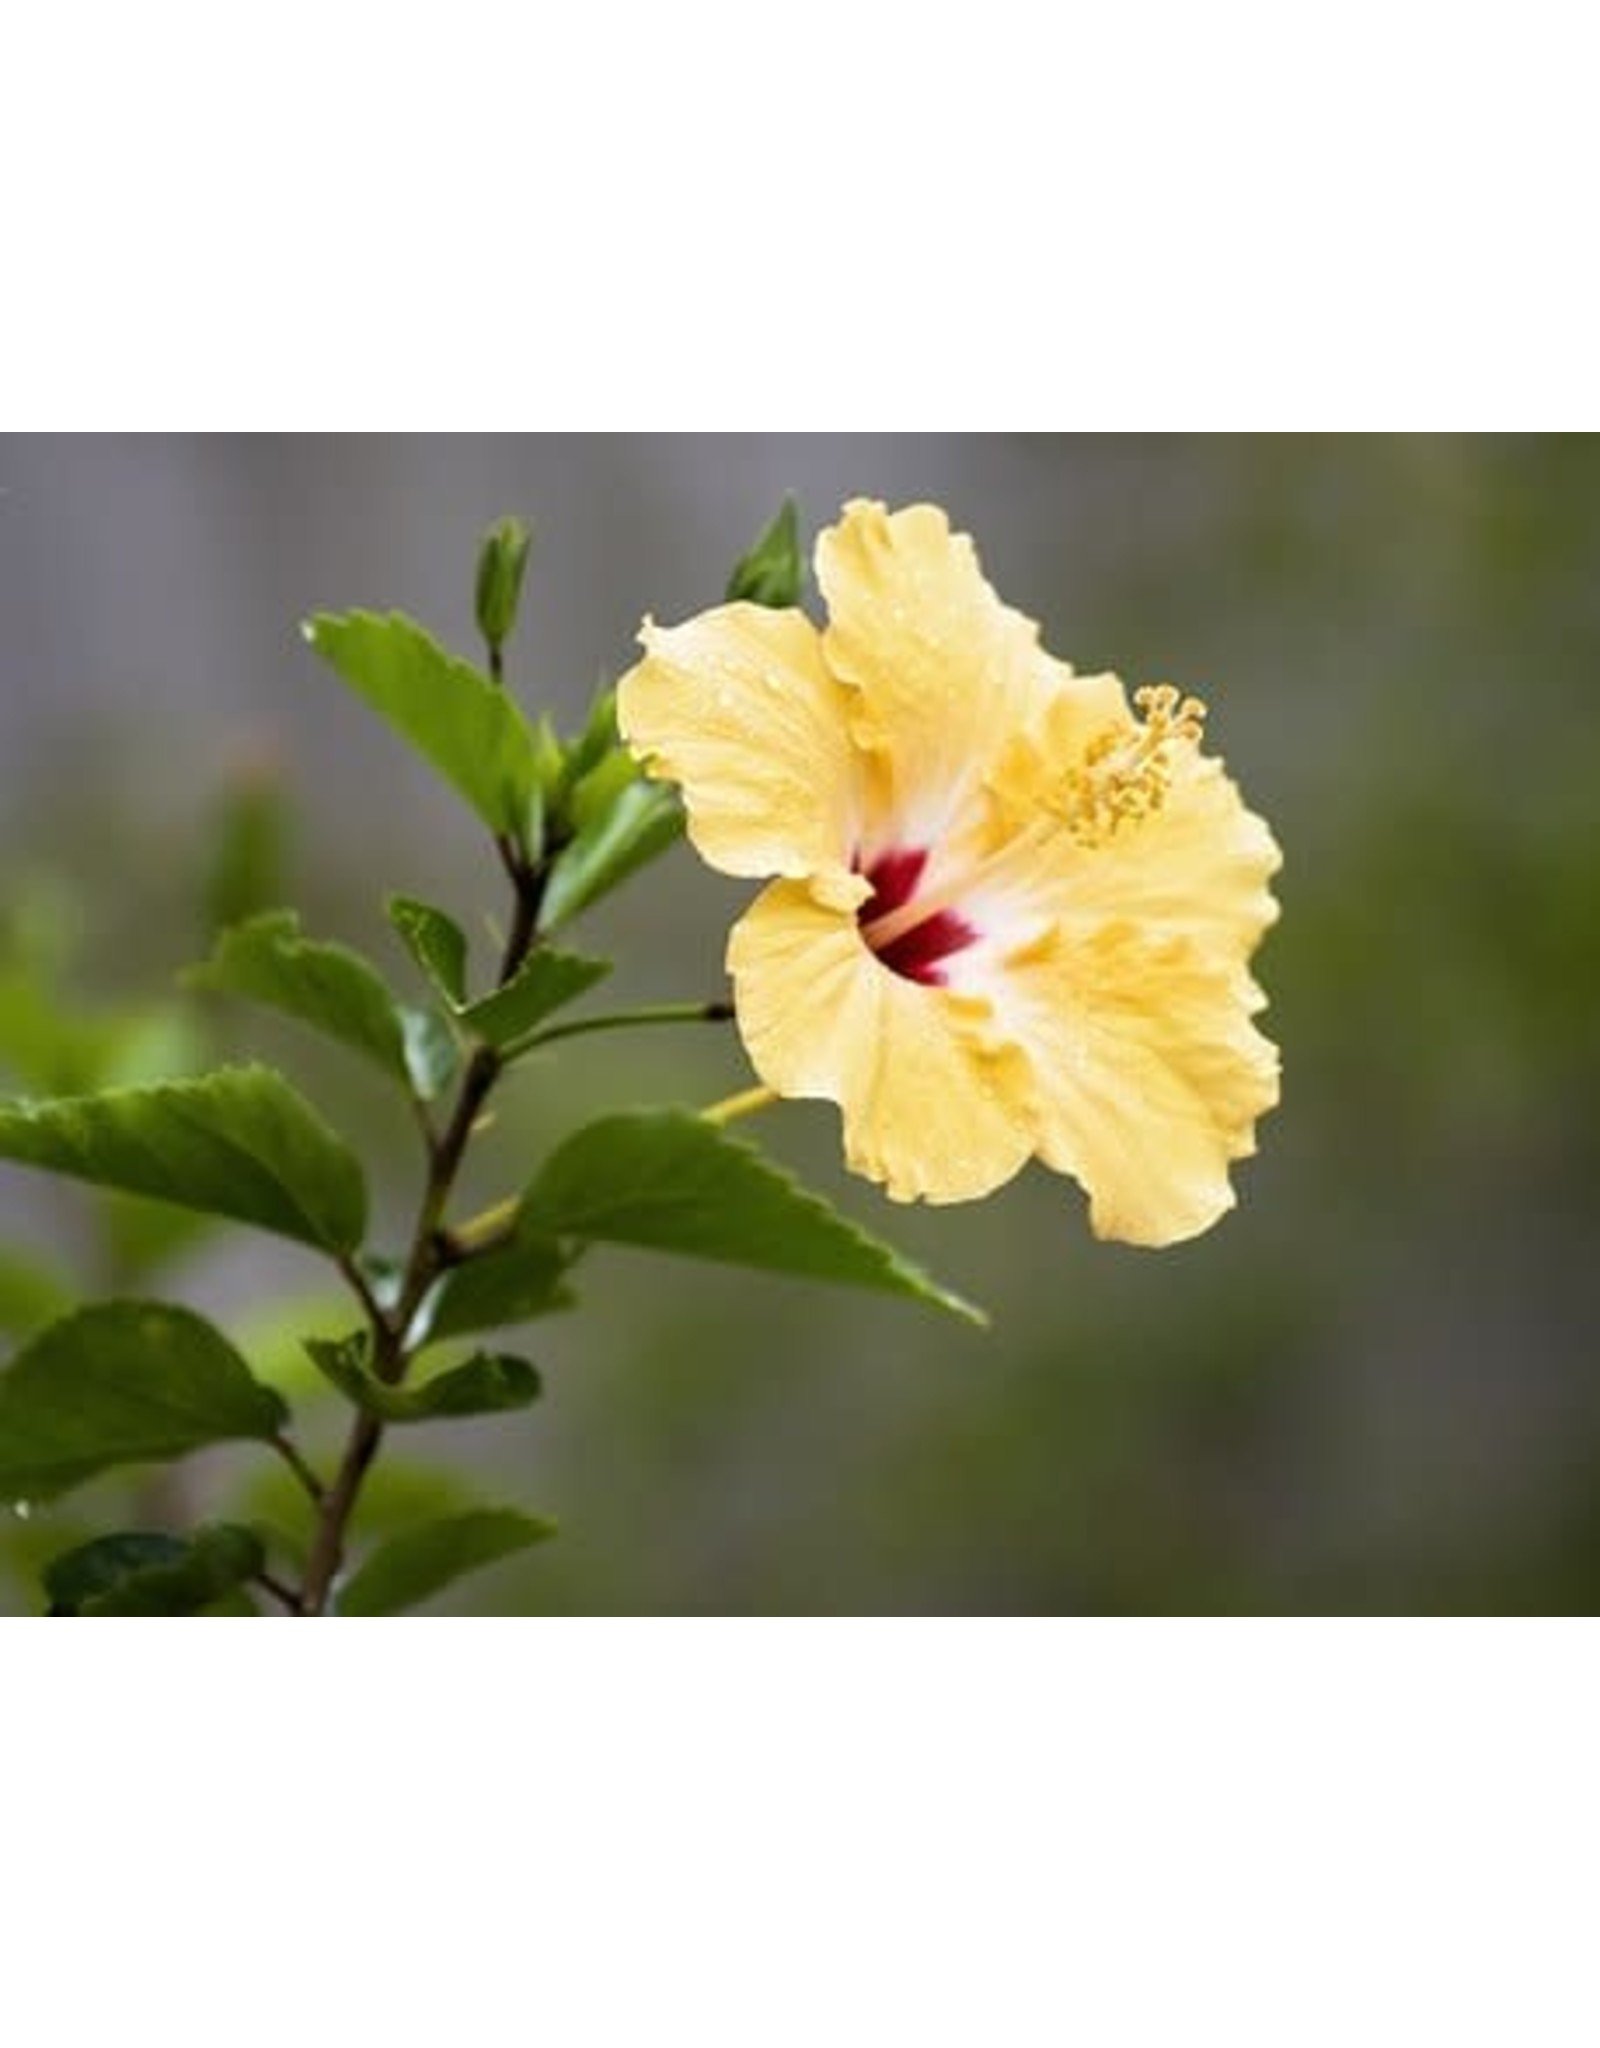 Tropical Hibiscus Bush - Hibiscus Rosa-Sinensis - 10"